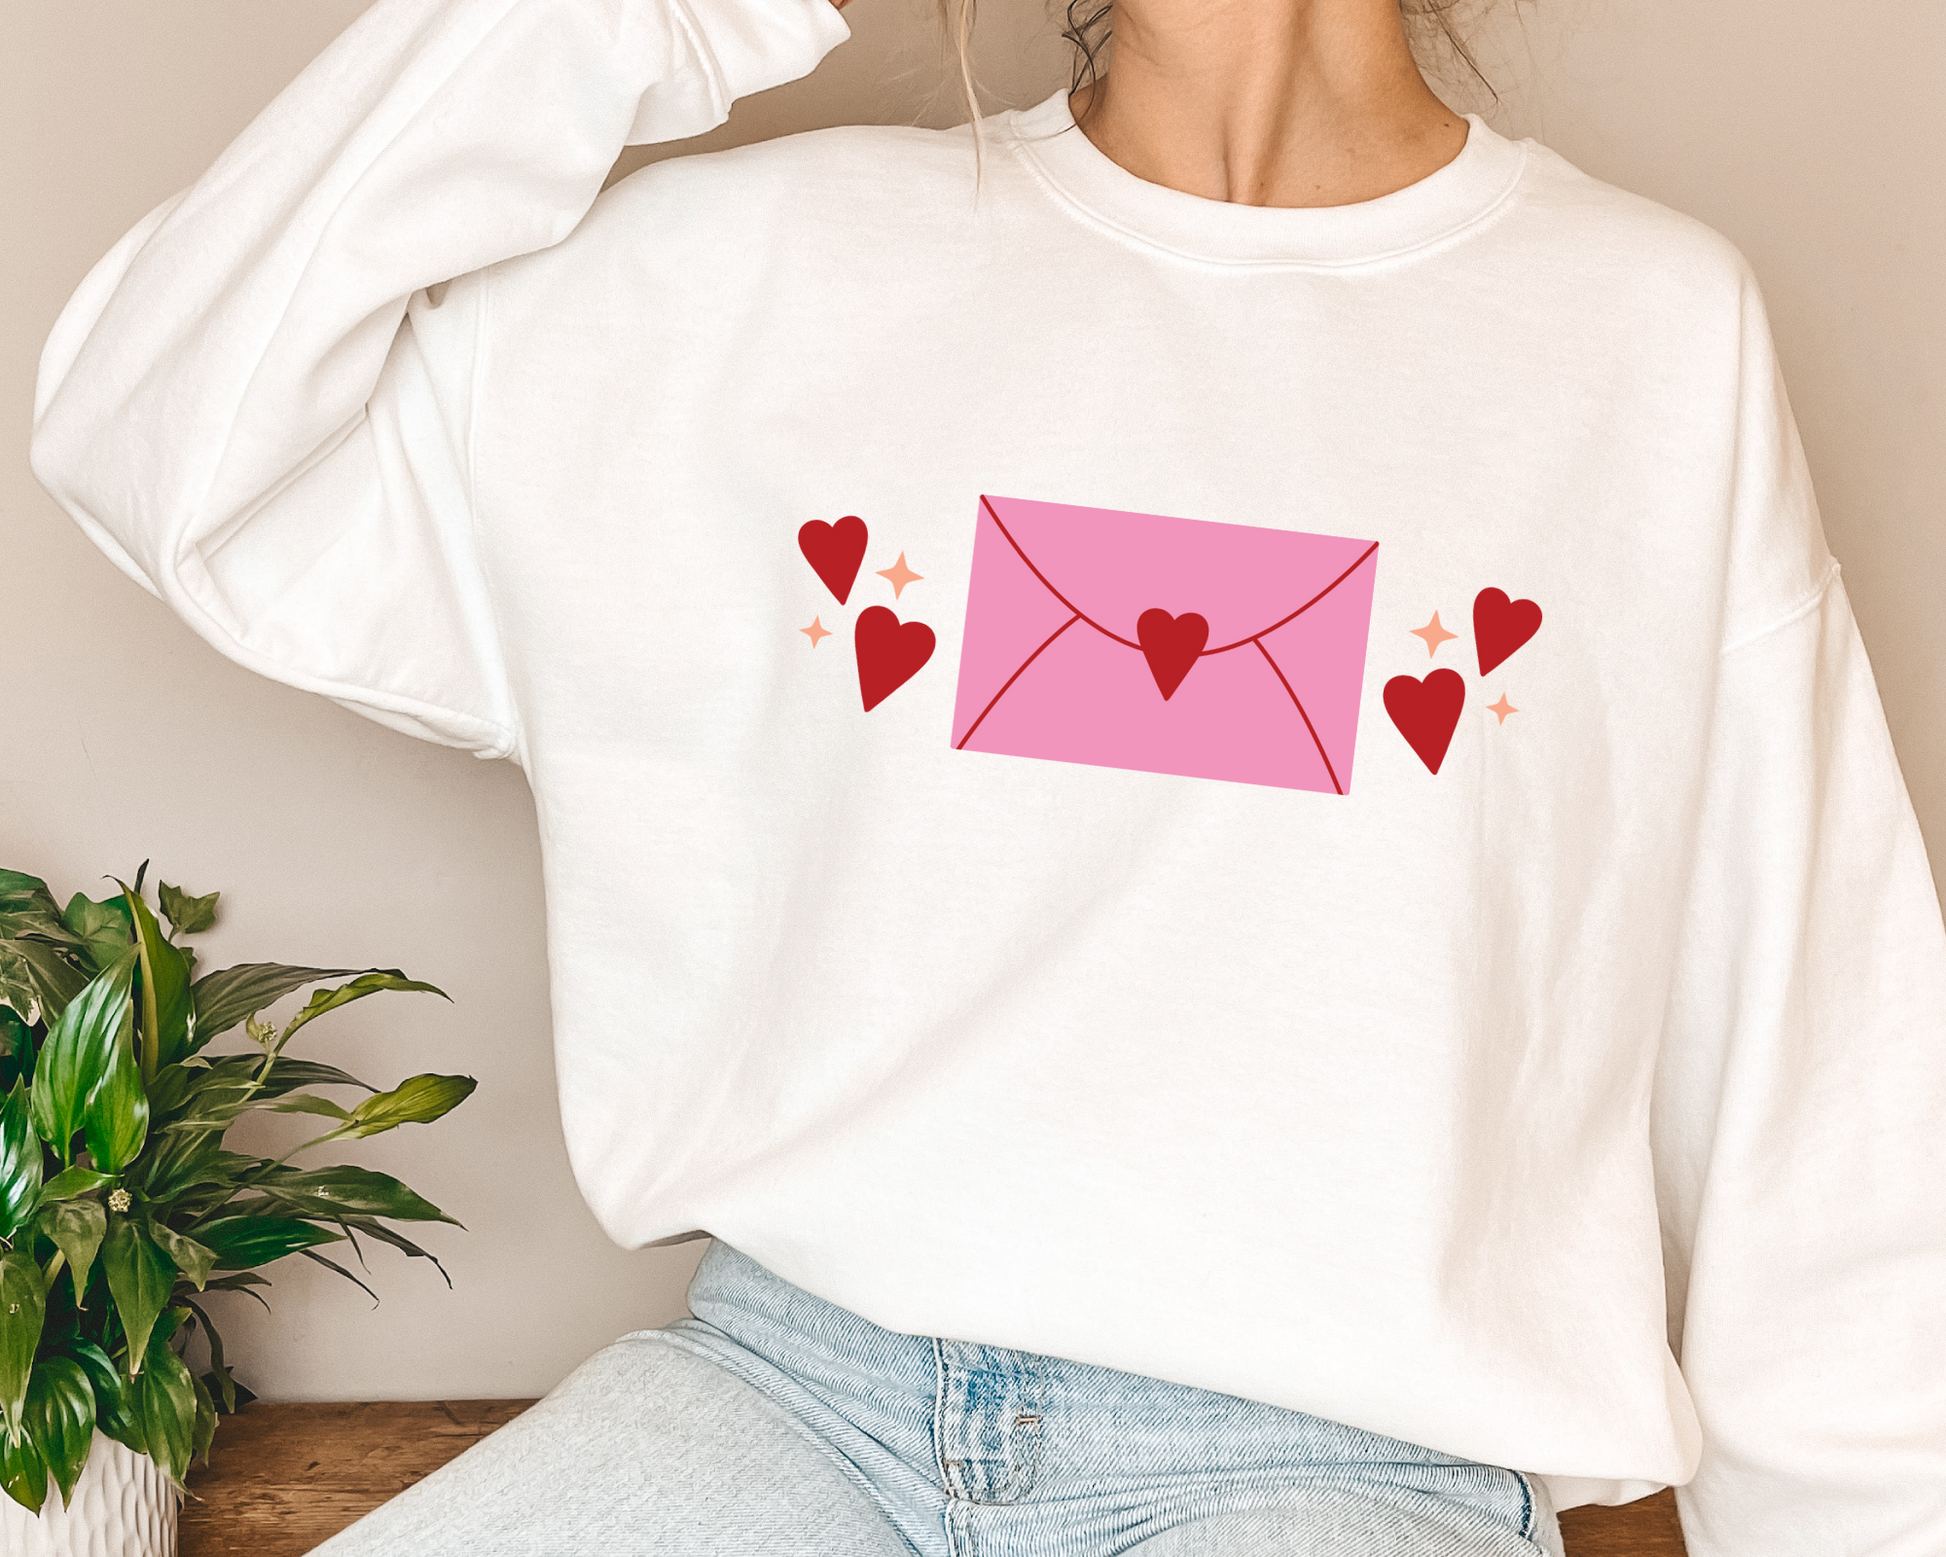 FREE Heart Envelope SVG | Heart SVG